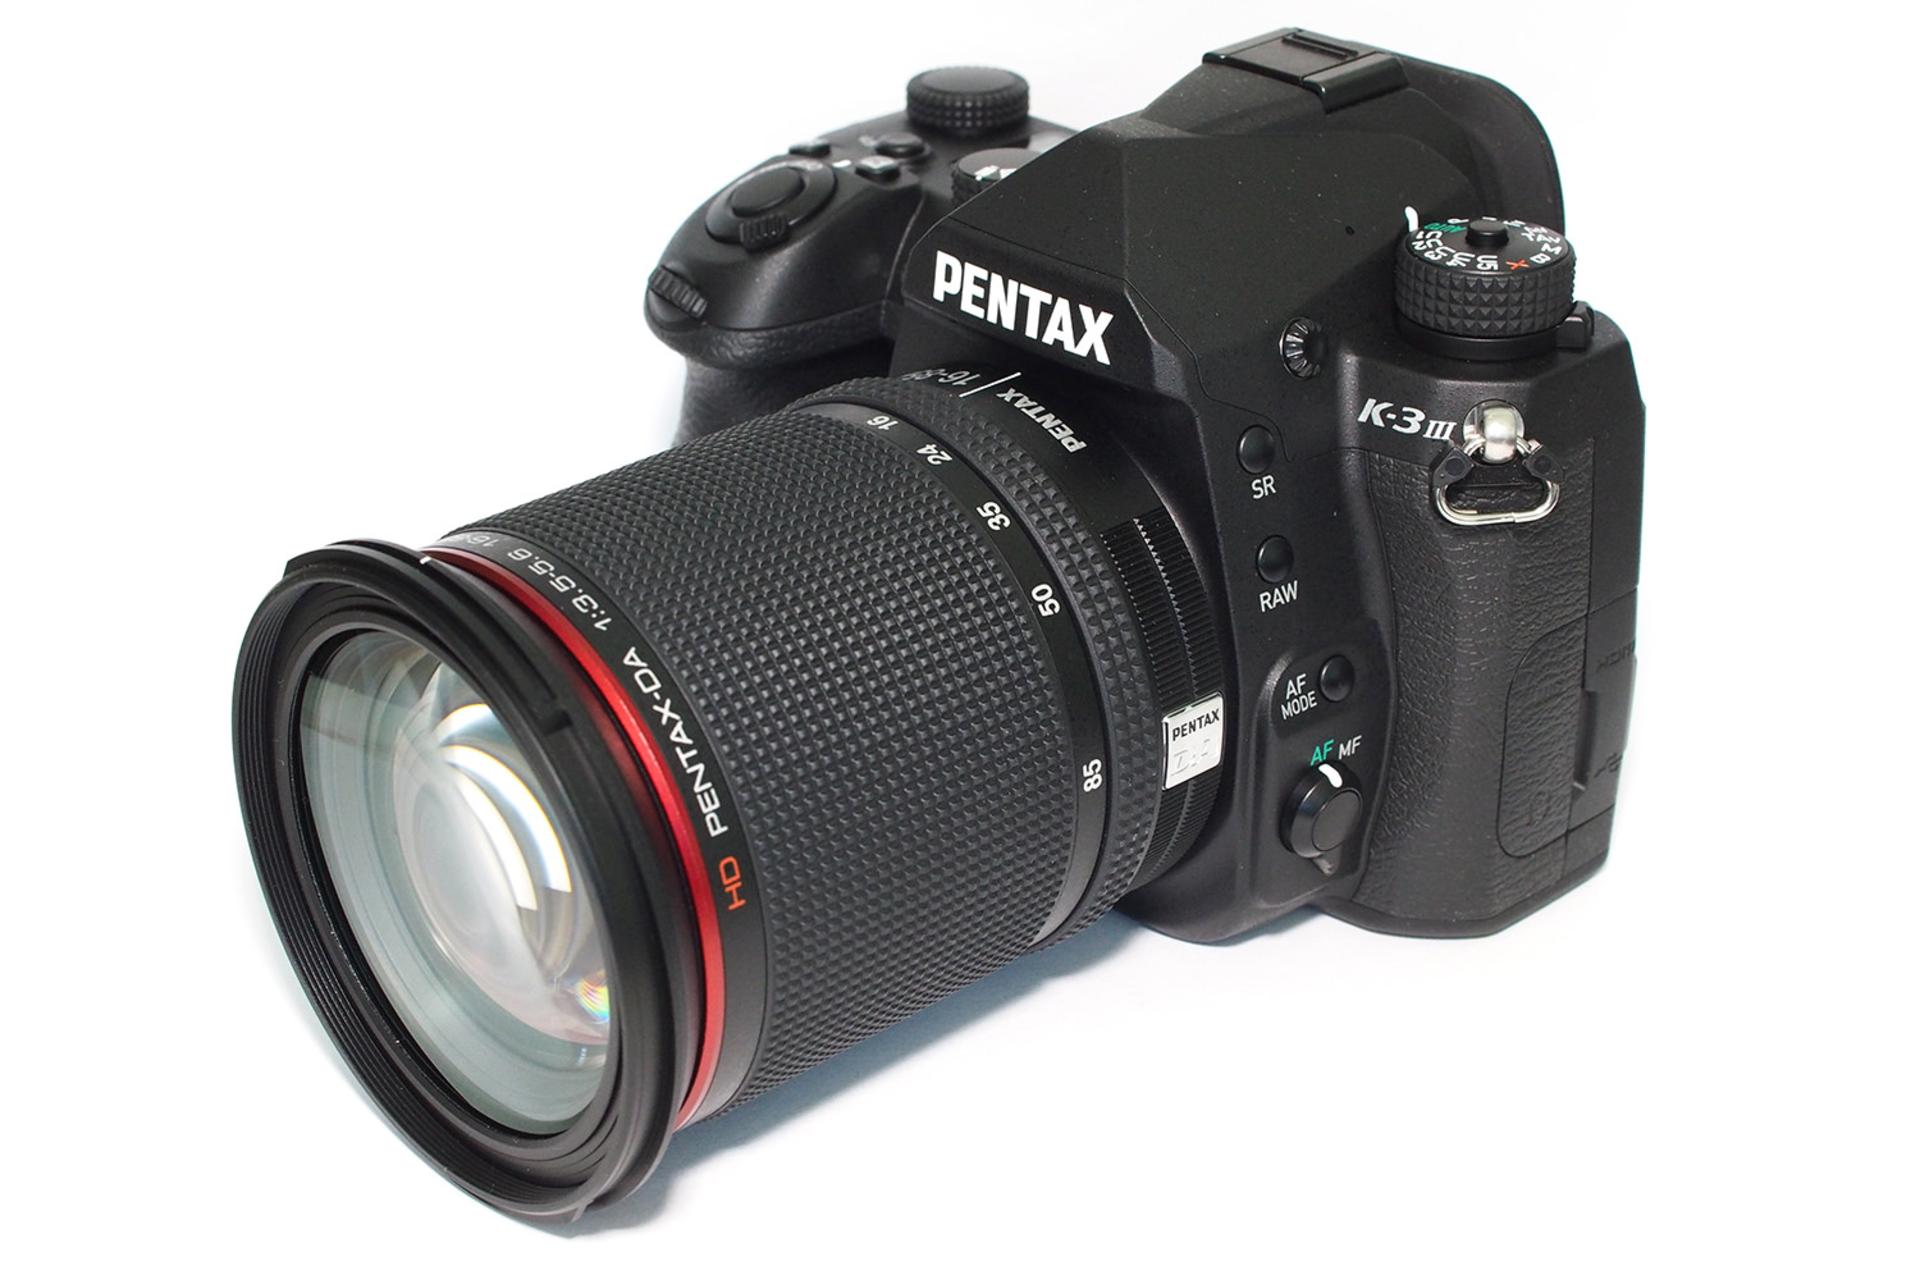 دوربین پنتاکس Pentax K-3 Mark III به همراه لنز